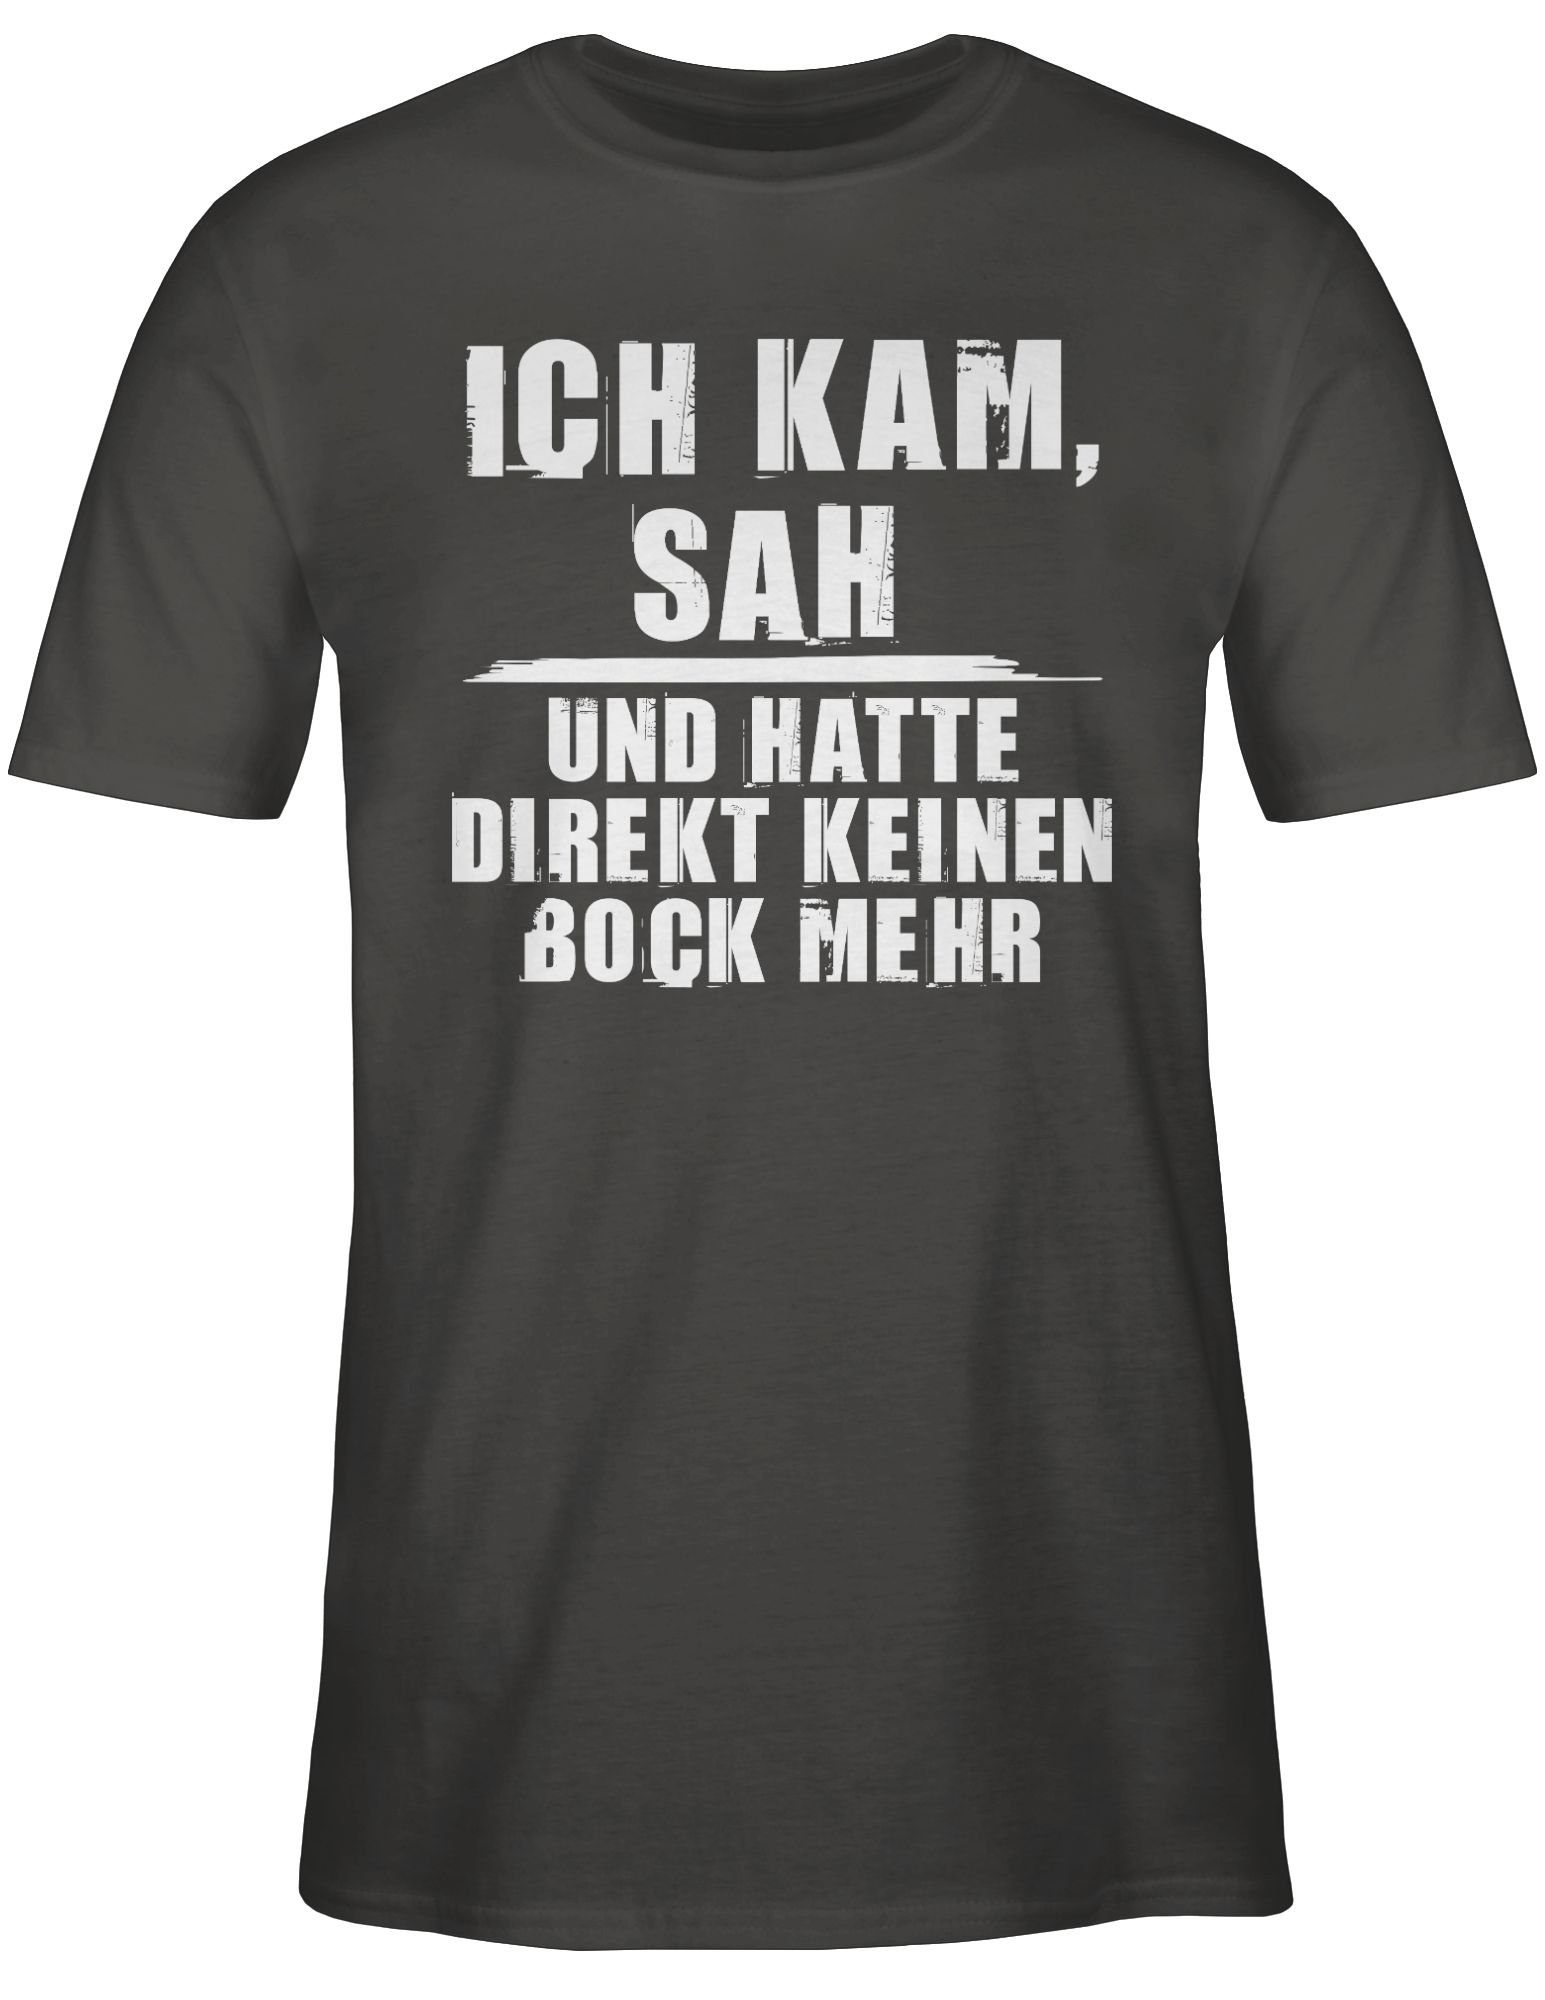 Shirtracer T-Shirt Ich kam sah mehr keinen 03 mit Spruch Statement Sprüche Dunkelgrau Bock